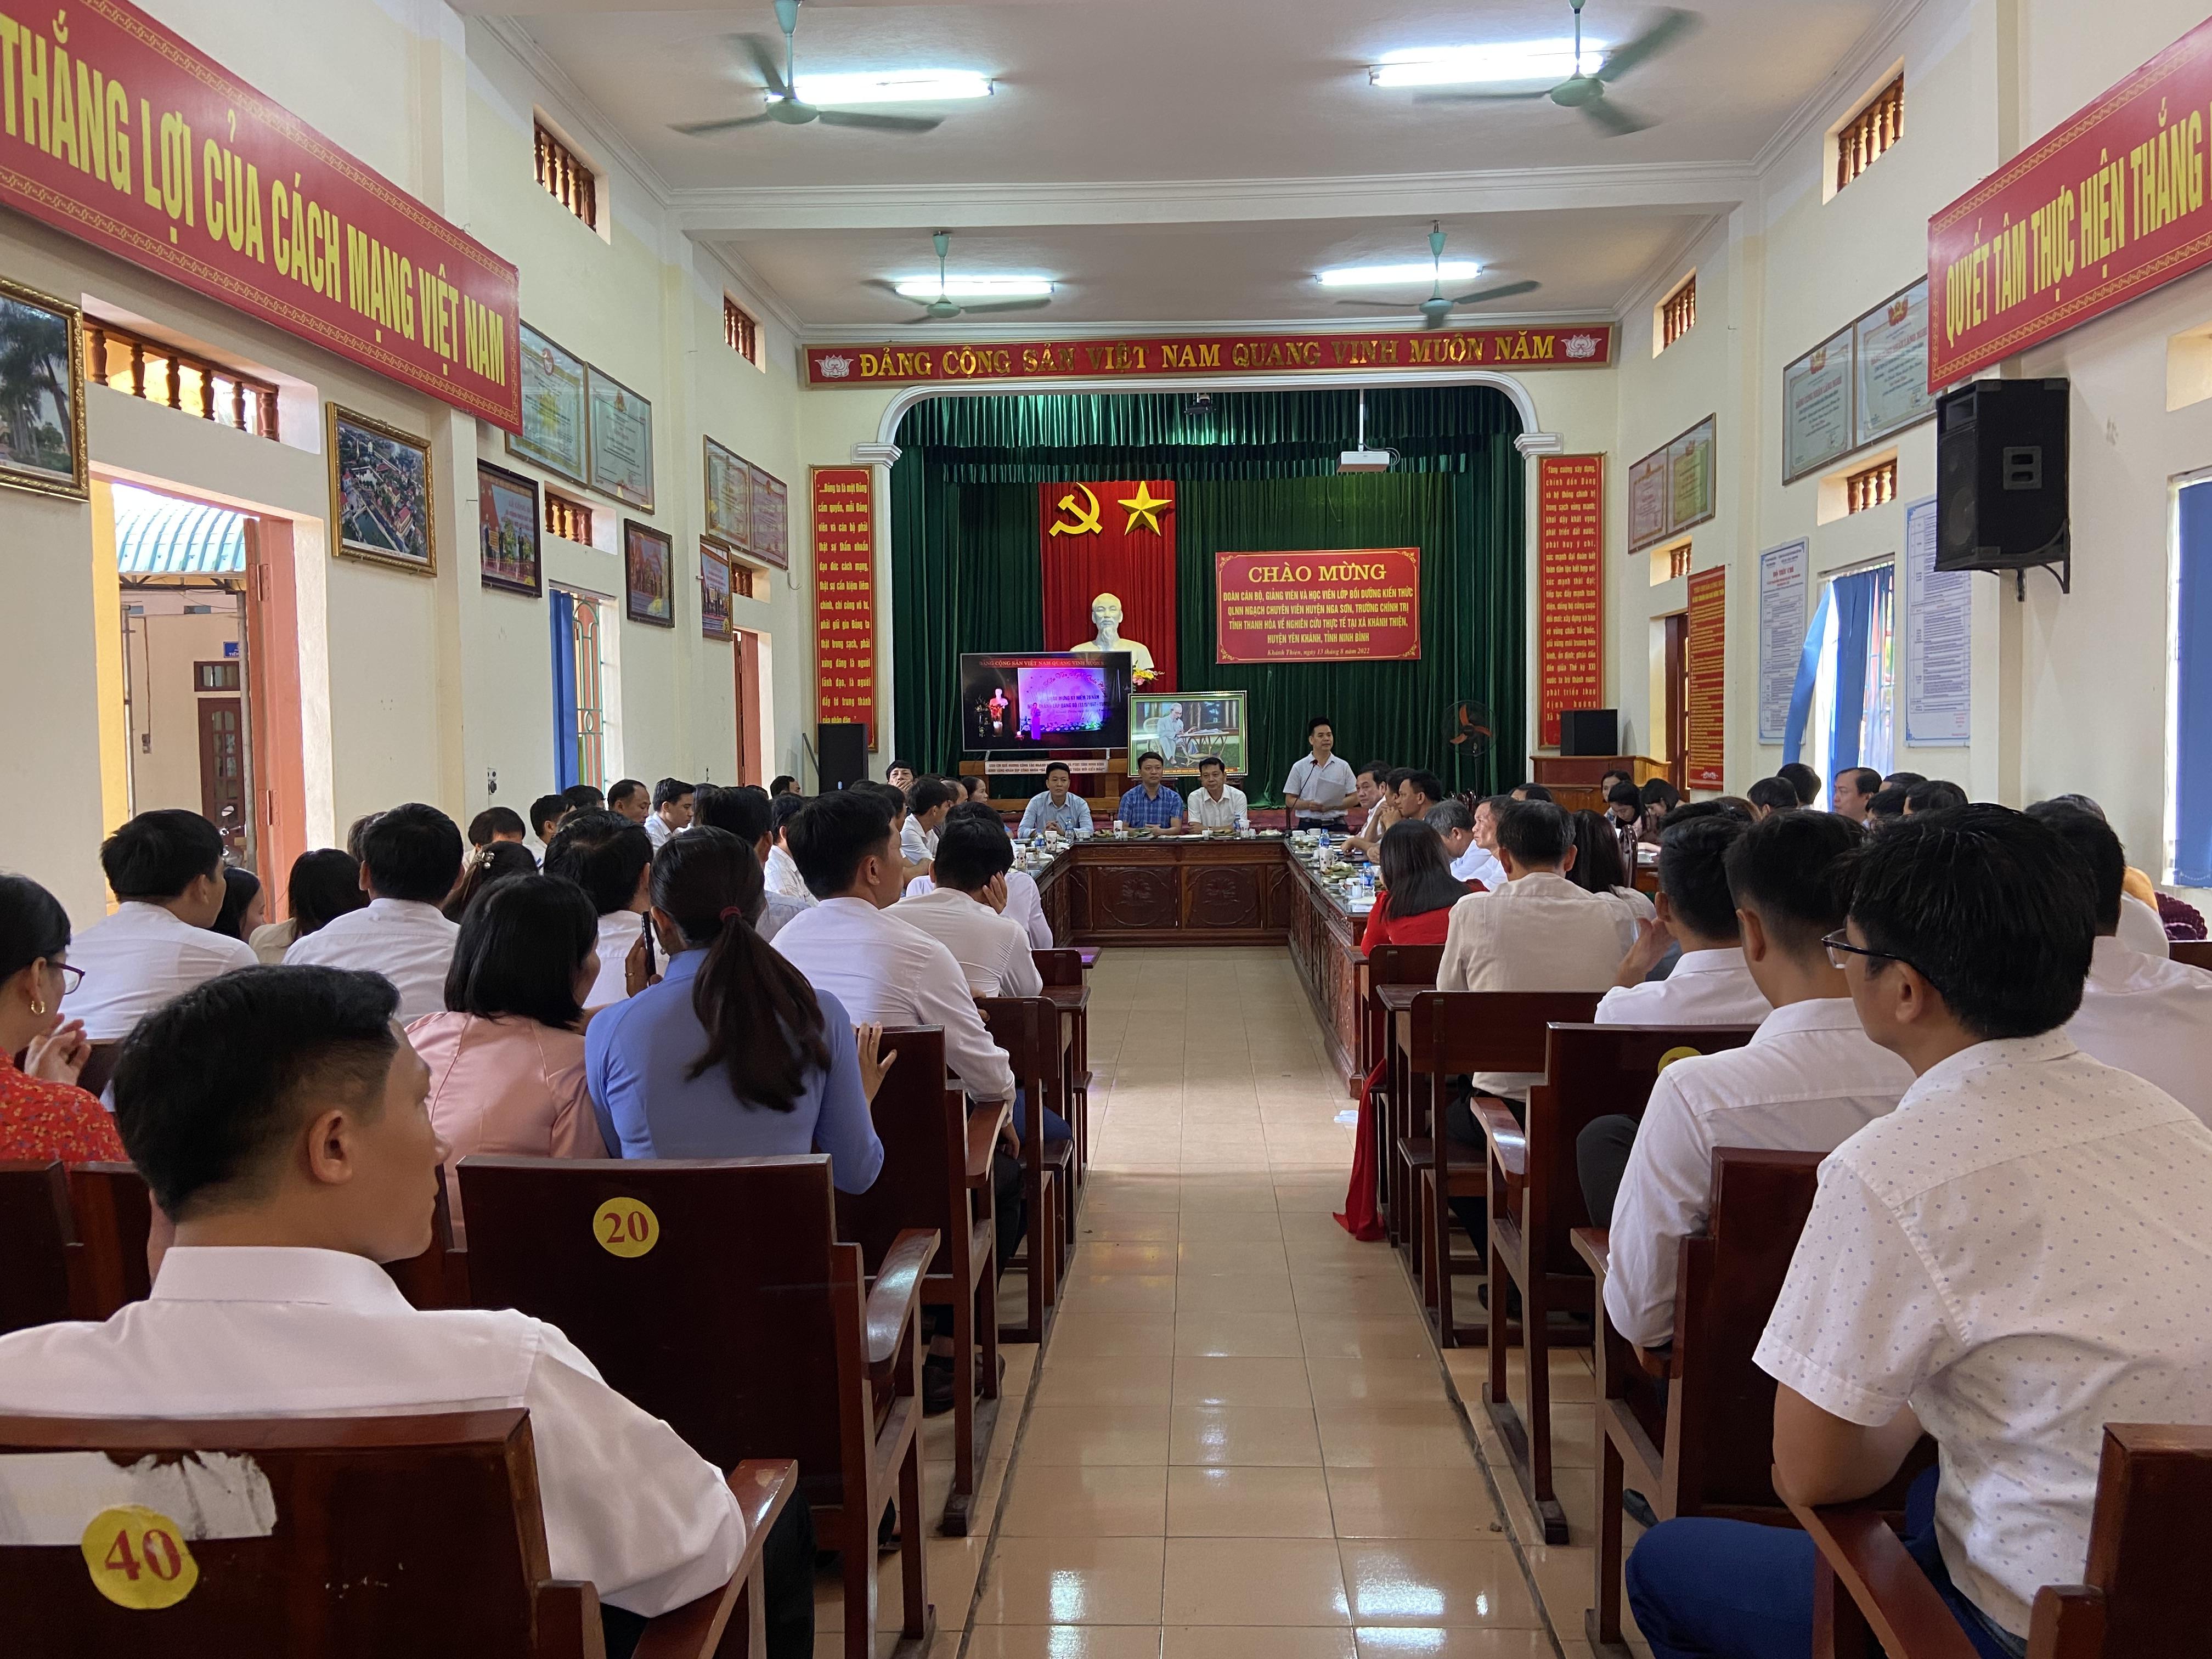 Đoàn cán bộ, giảng viên và học viên lớp bồi dưỡng kiến thức QLNN ngạch chuyên viên huyện Nga Sơn, trường chính trị tỉnh Thanh Hóa về nghiên cứu thực tế tại xã nhà